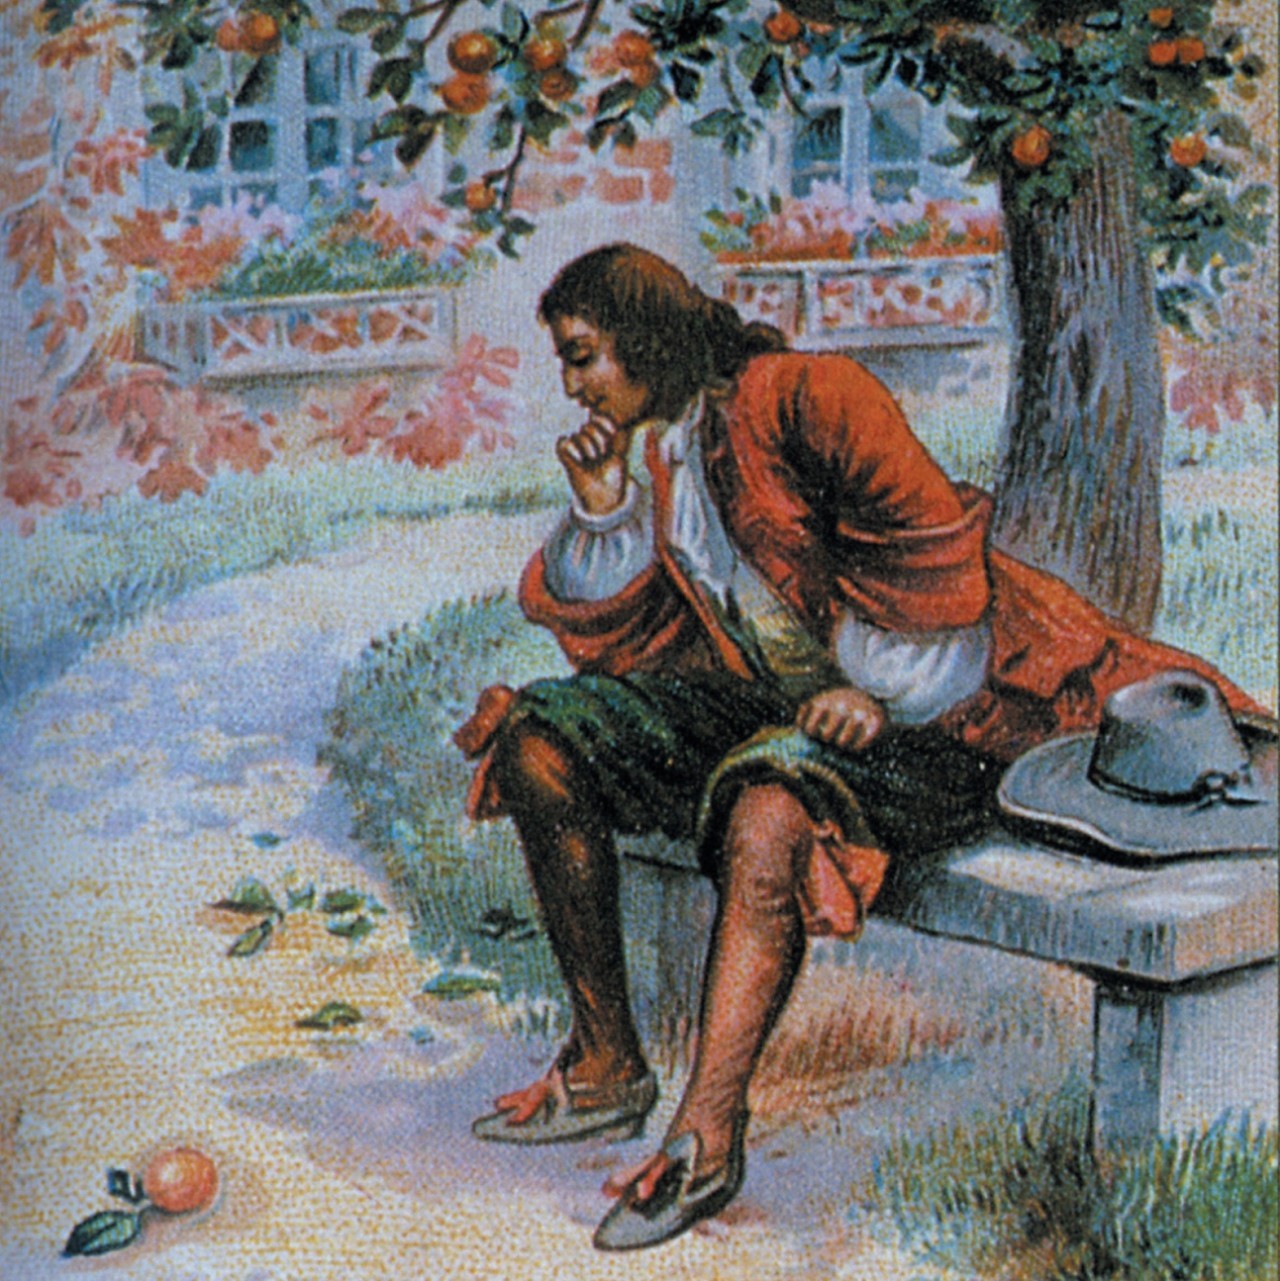 牛顿还是剑桥大学圣三一学院三年级的学生,一天傍晚,他坐在苹果树下